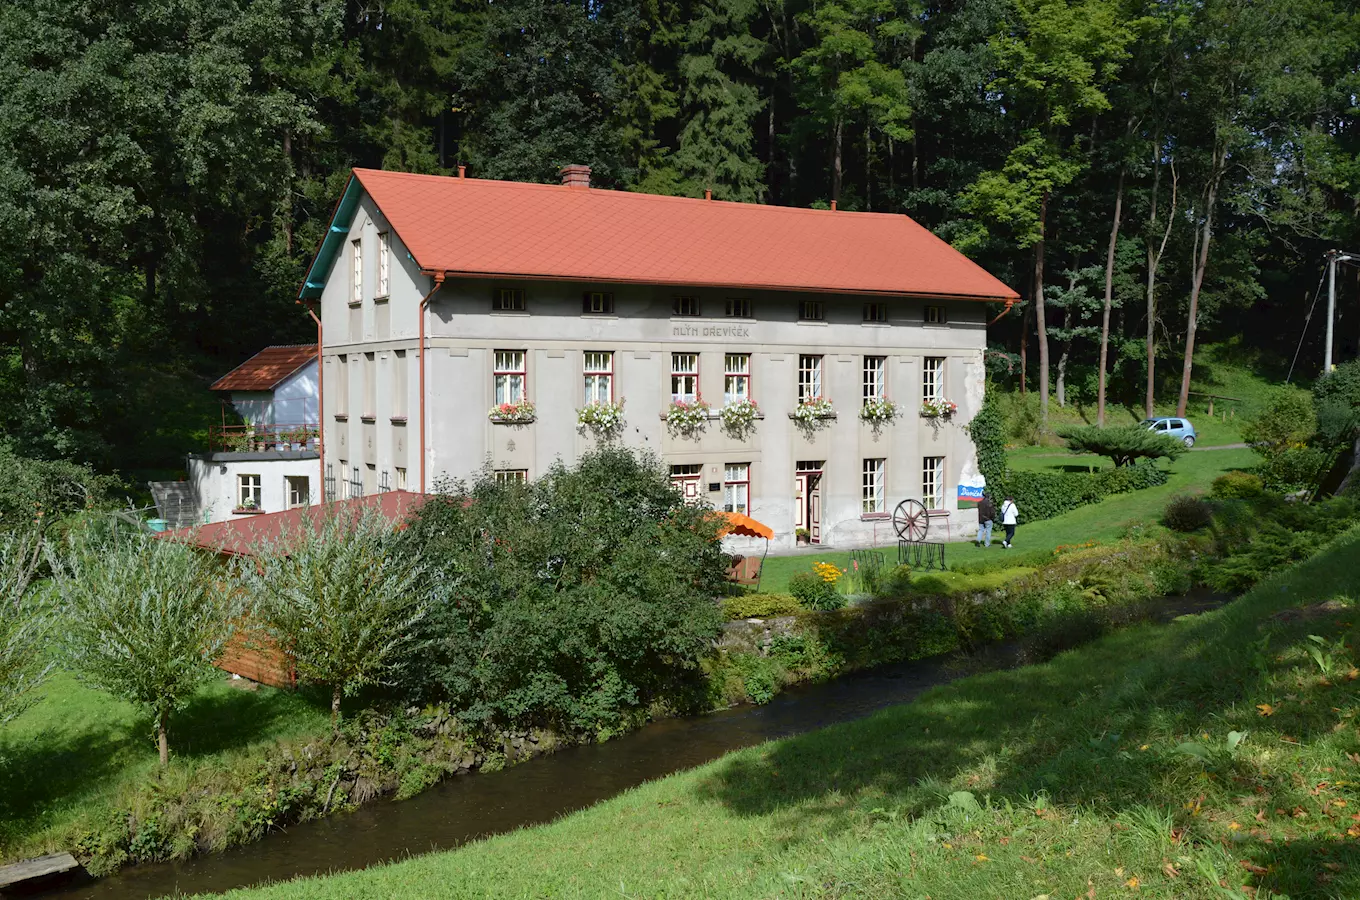 Mlýn Dřevíček – Mlynářské muzeum v Horním Dřevíči